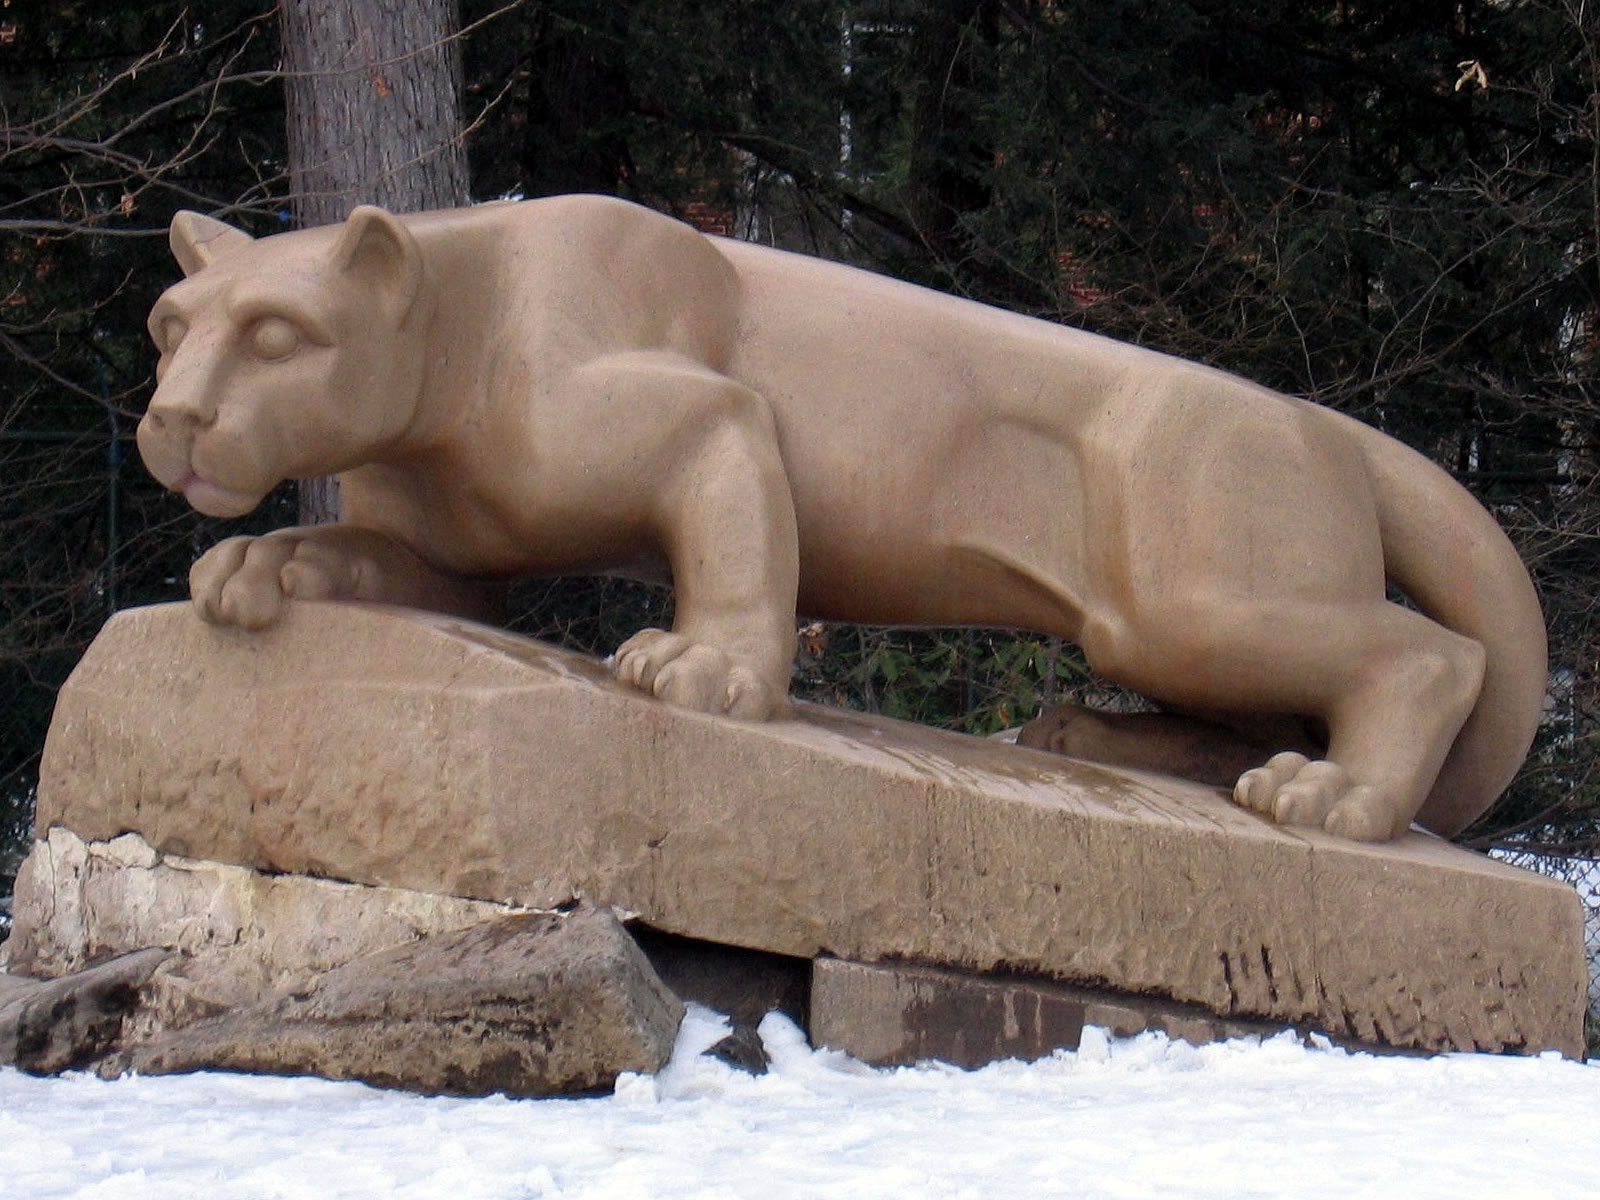 Penn State Nittany Lion Shrine